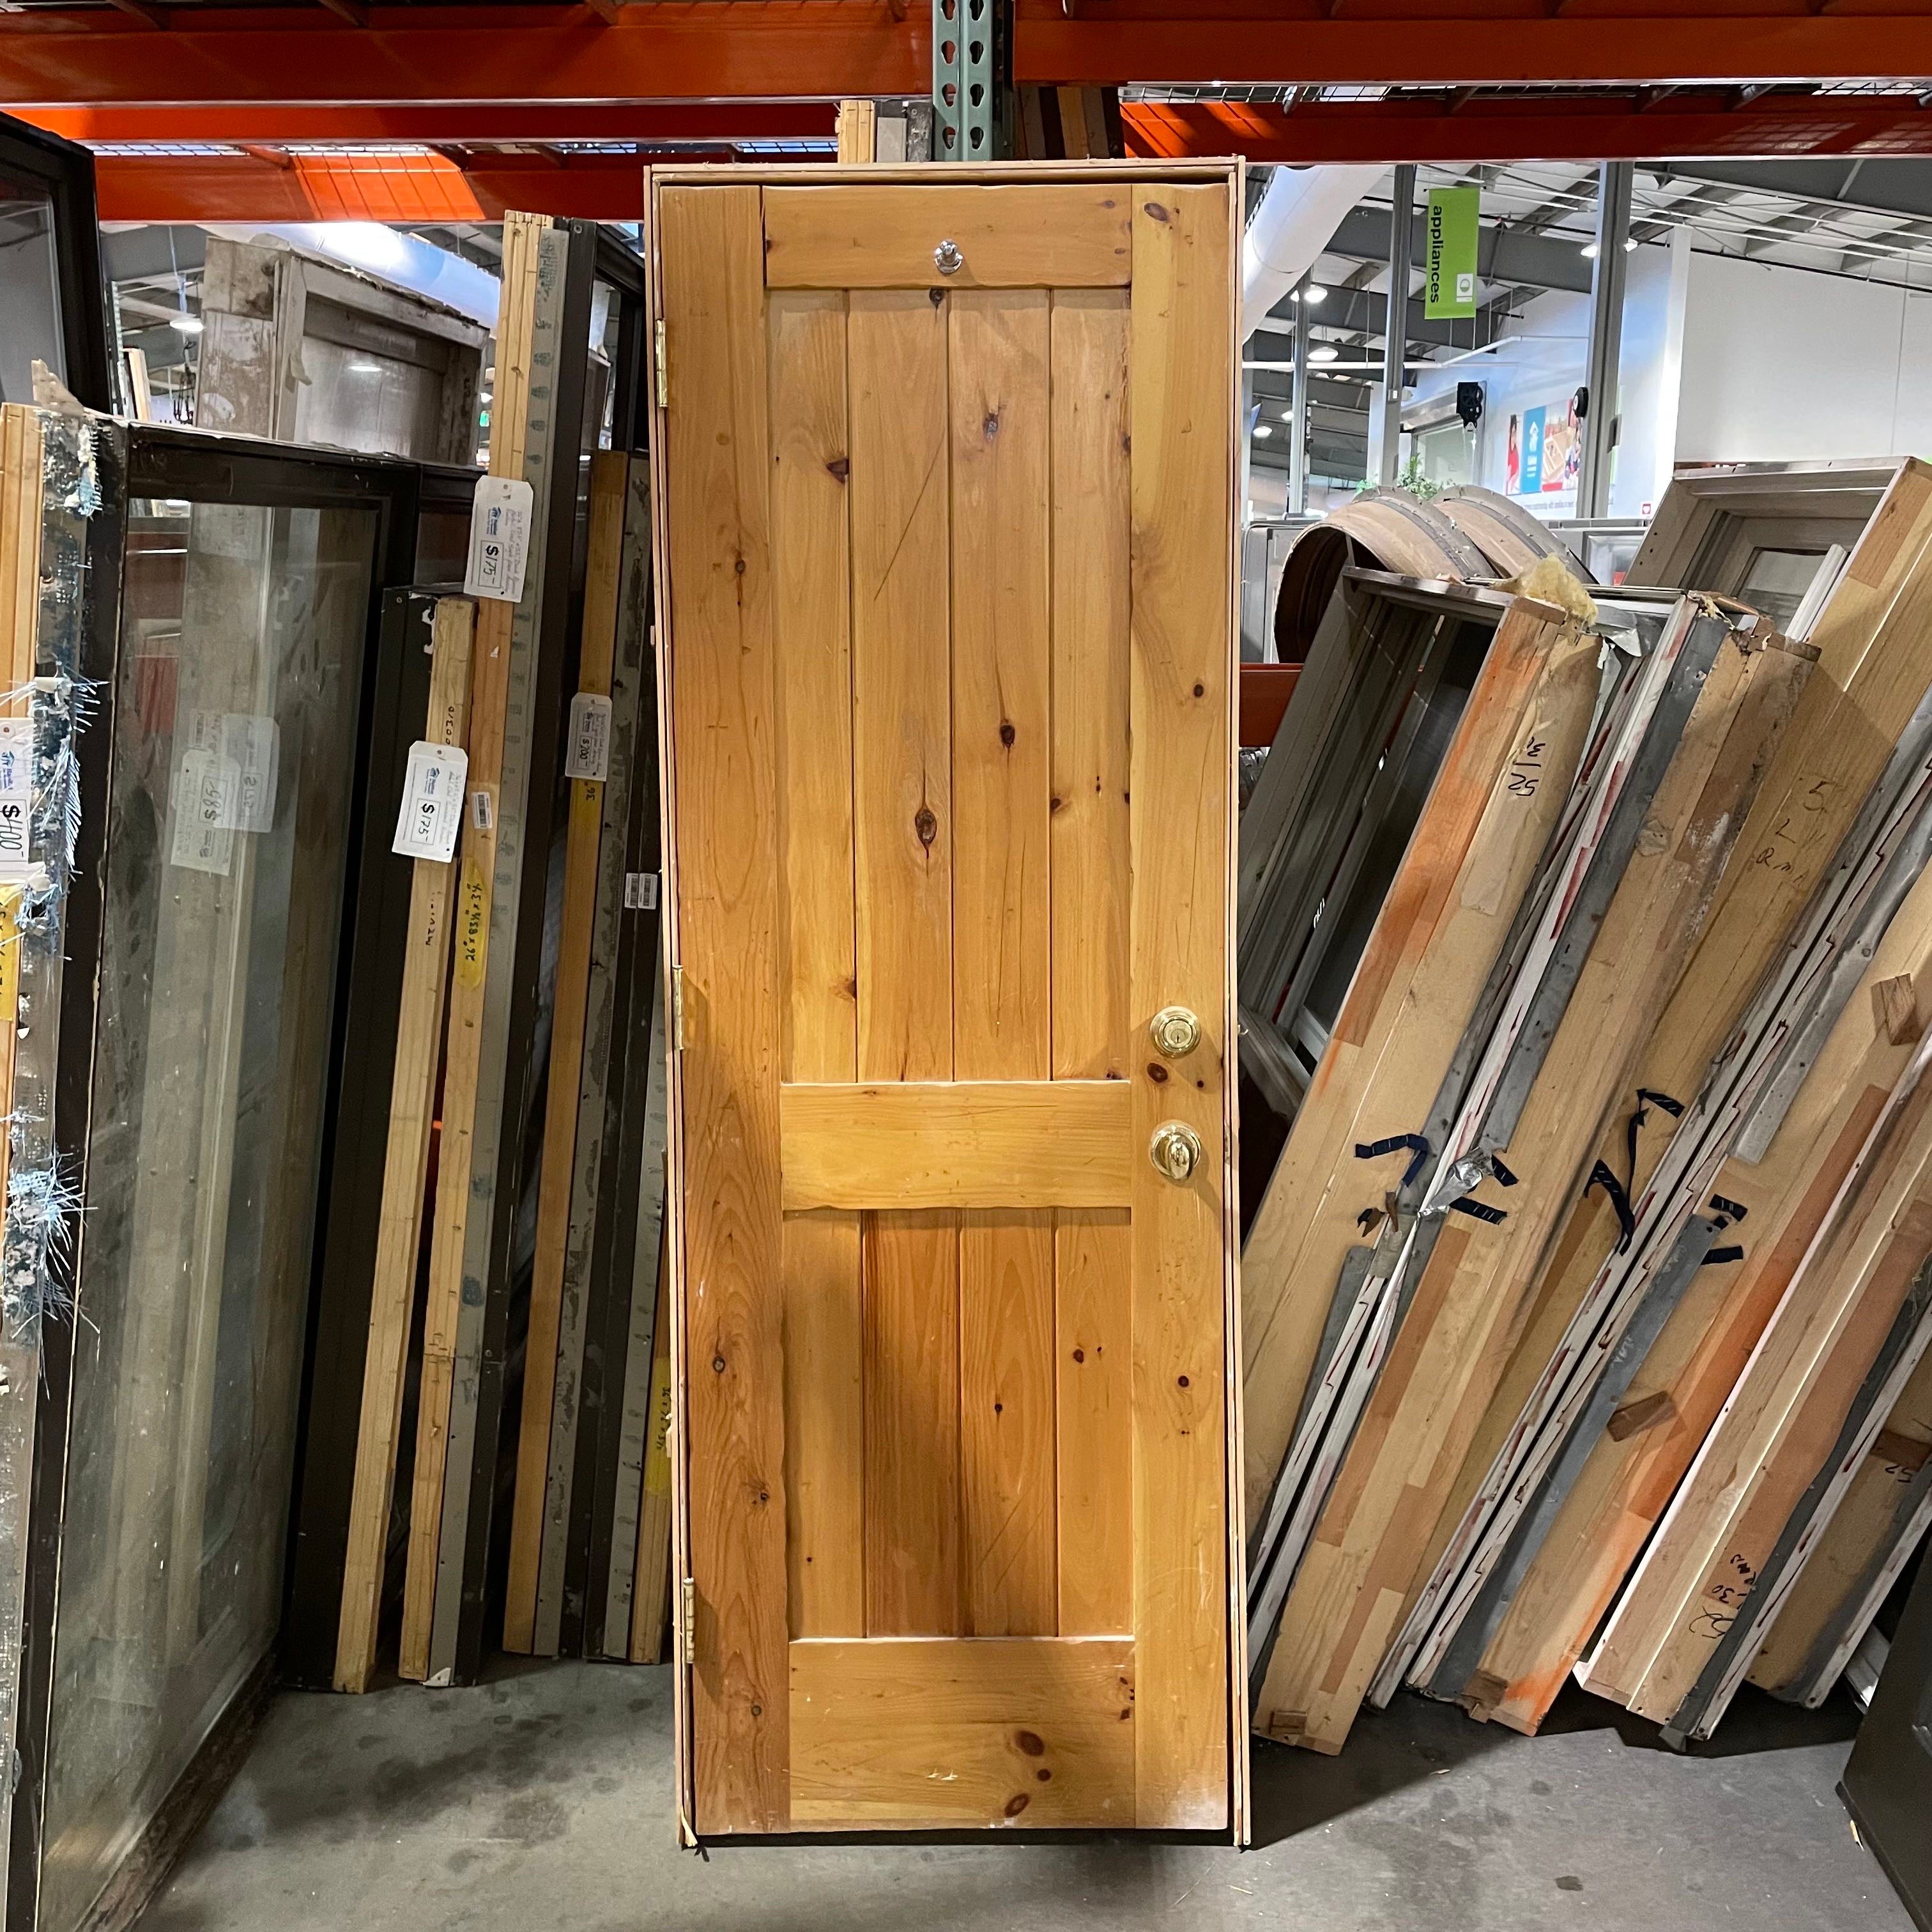 28"x 84"x 1.75" 2 Panel Wainscot Knotty Pine Honey Finish Interior Door